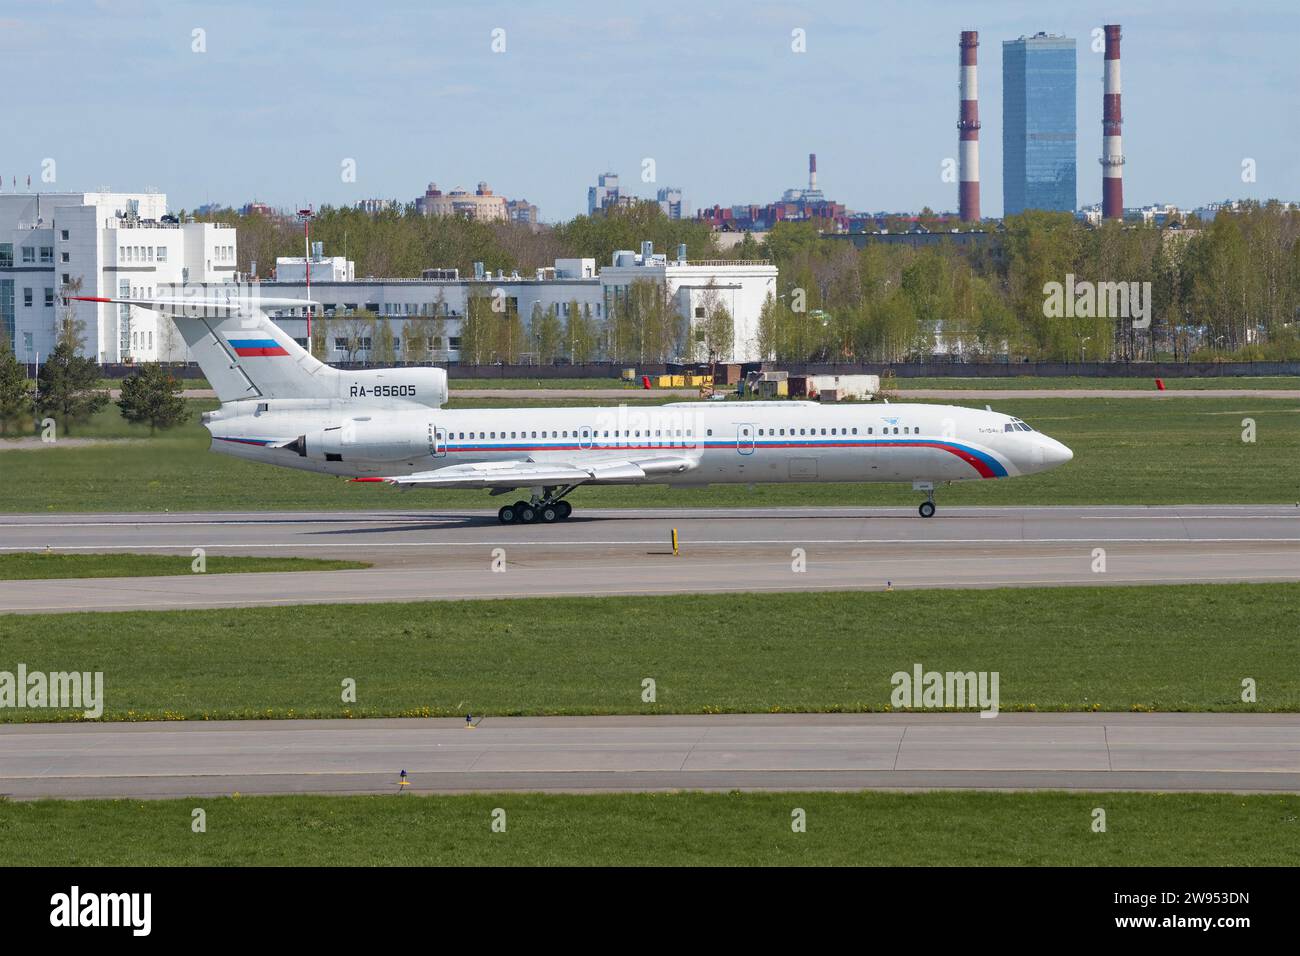 SANKT PETERSBURG, RUSSLAND - 20. MAI 2022: Sowjetisches Flugzeug Tu-154B-2 (RA-85605) auf dem Flughafen Pulkowo an einem sonnigen Maitag Stockfoto